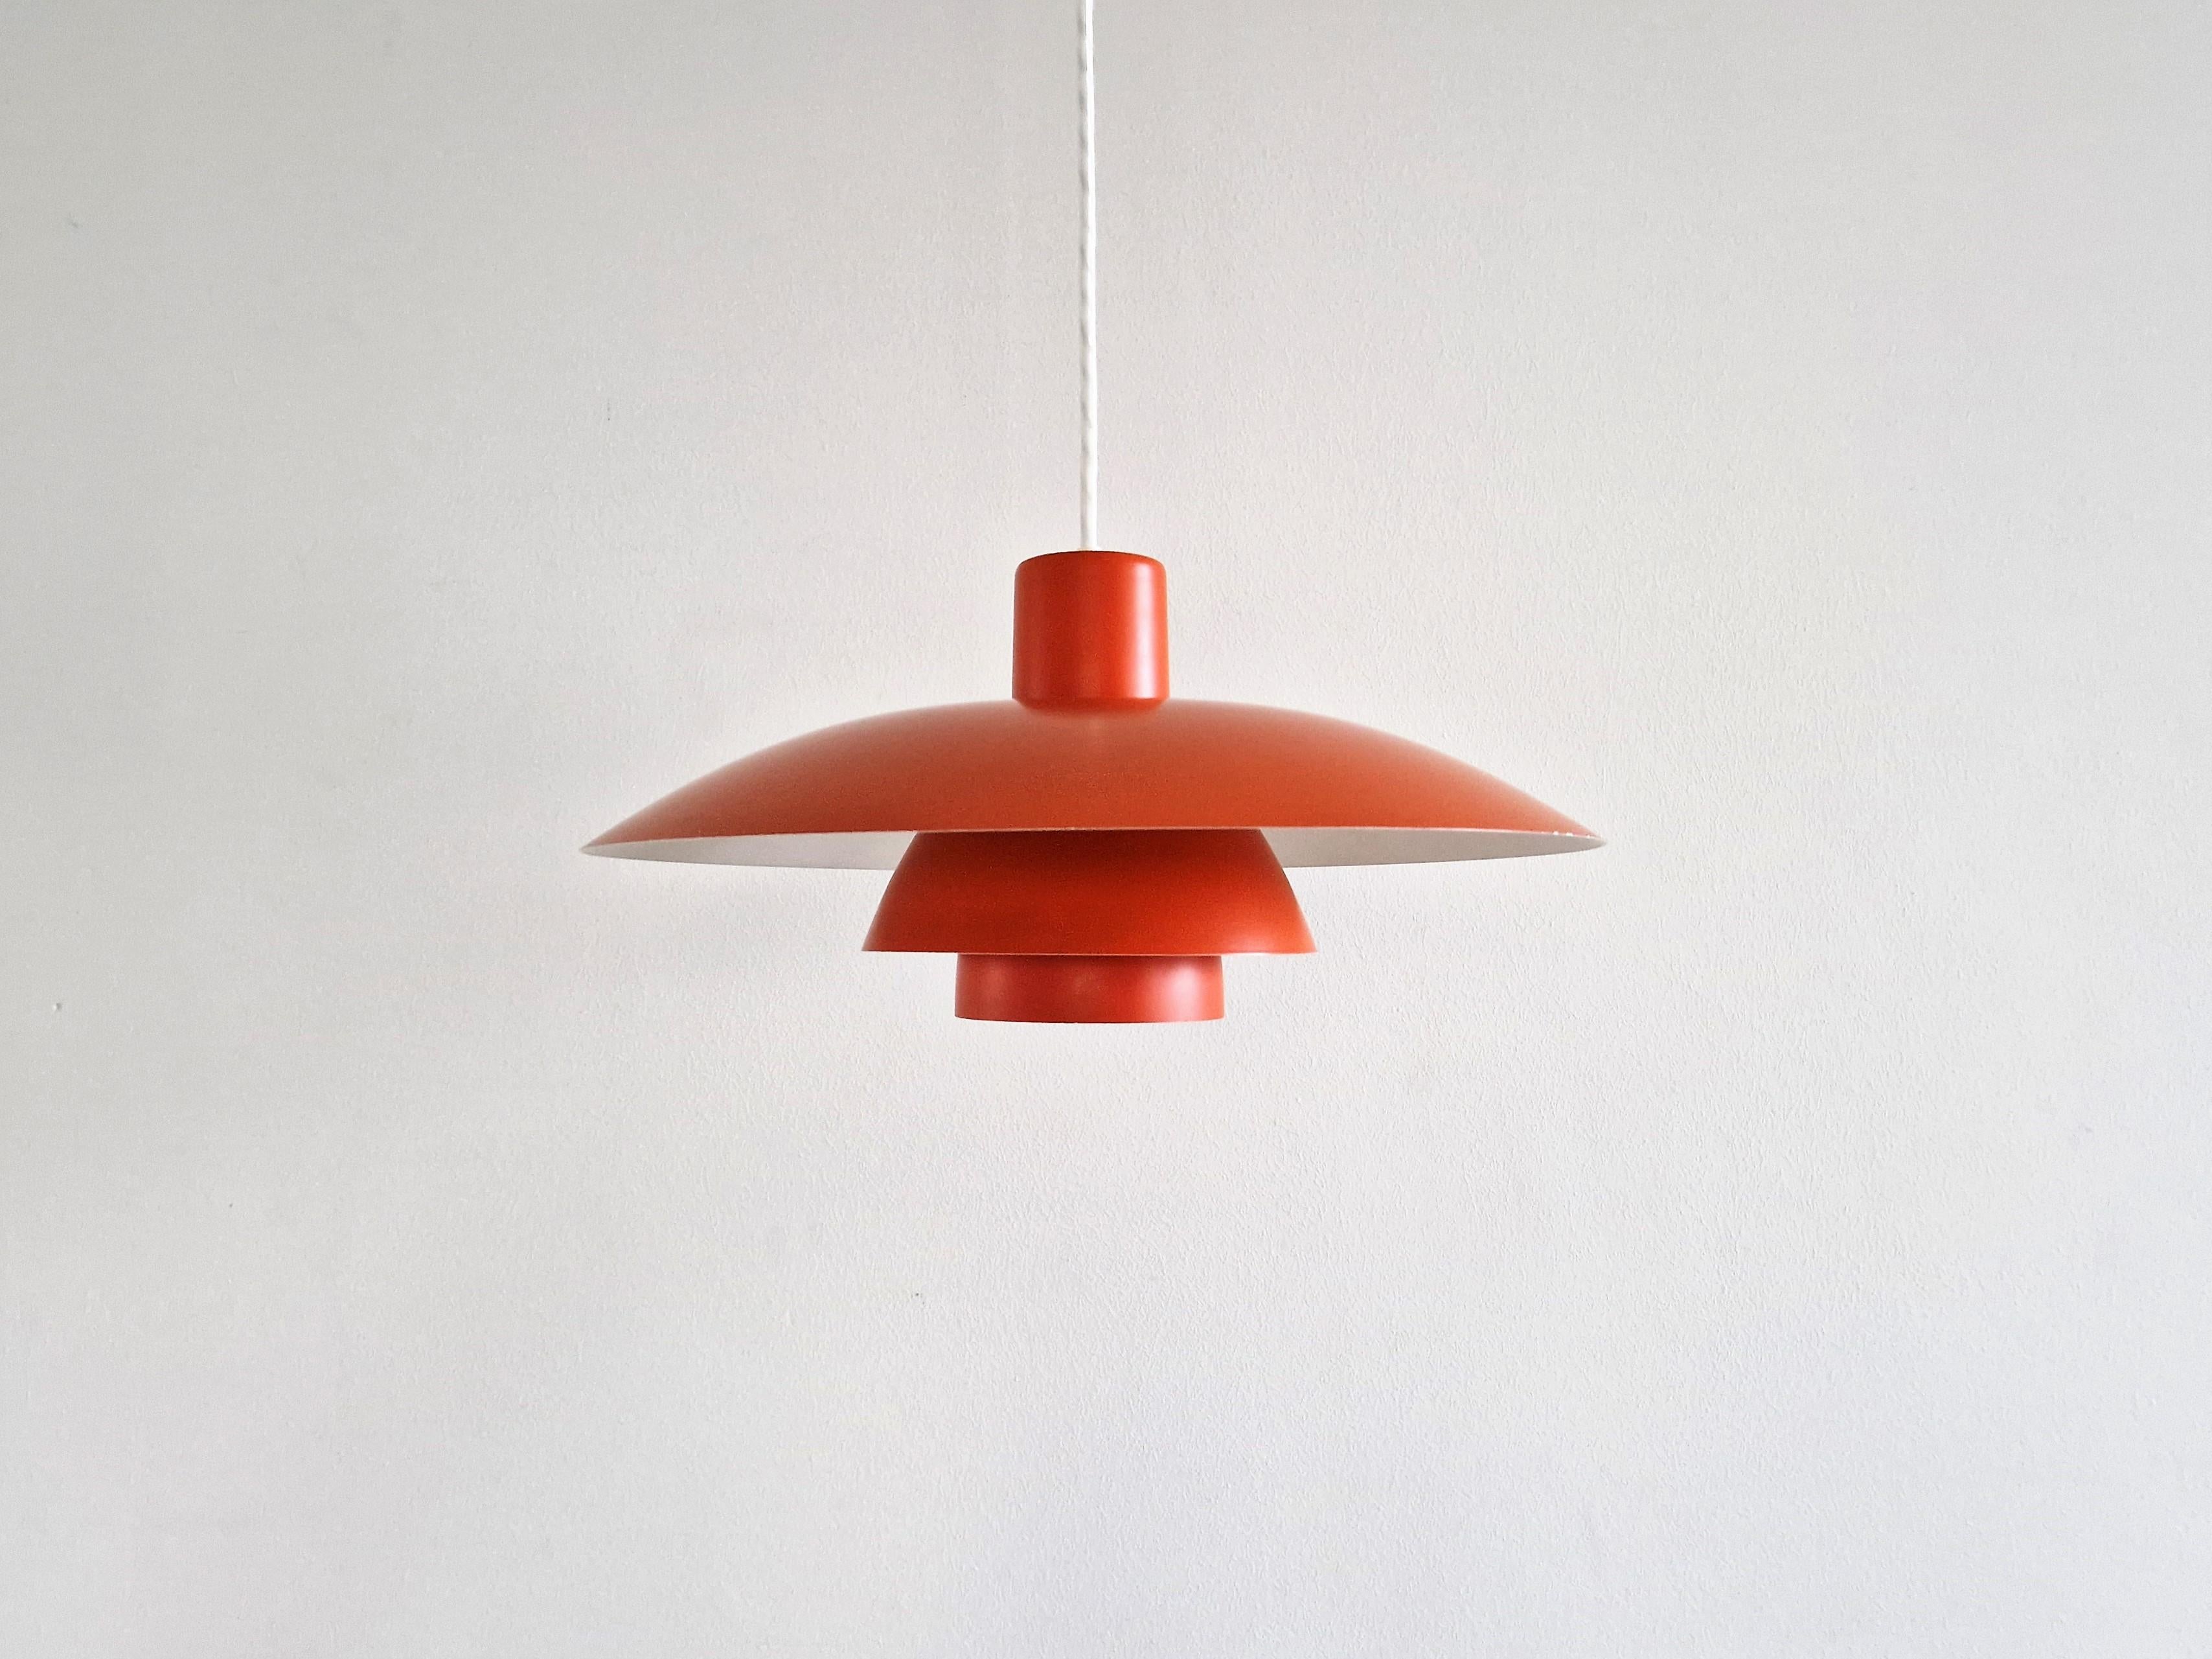 La lampe suspendue PH 4/3 est un design magnifique et classique de Poul Henningsen. La lampe est produite par Louis Poulsen depuis 1966 jusqu'à aujourd'hui. Il s'agit d'une version originale et ancienne qui a été fabriquée en rouge, blanc et bleu.